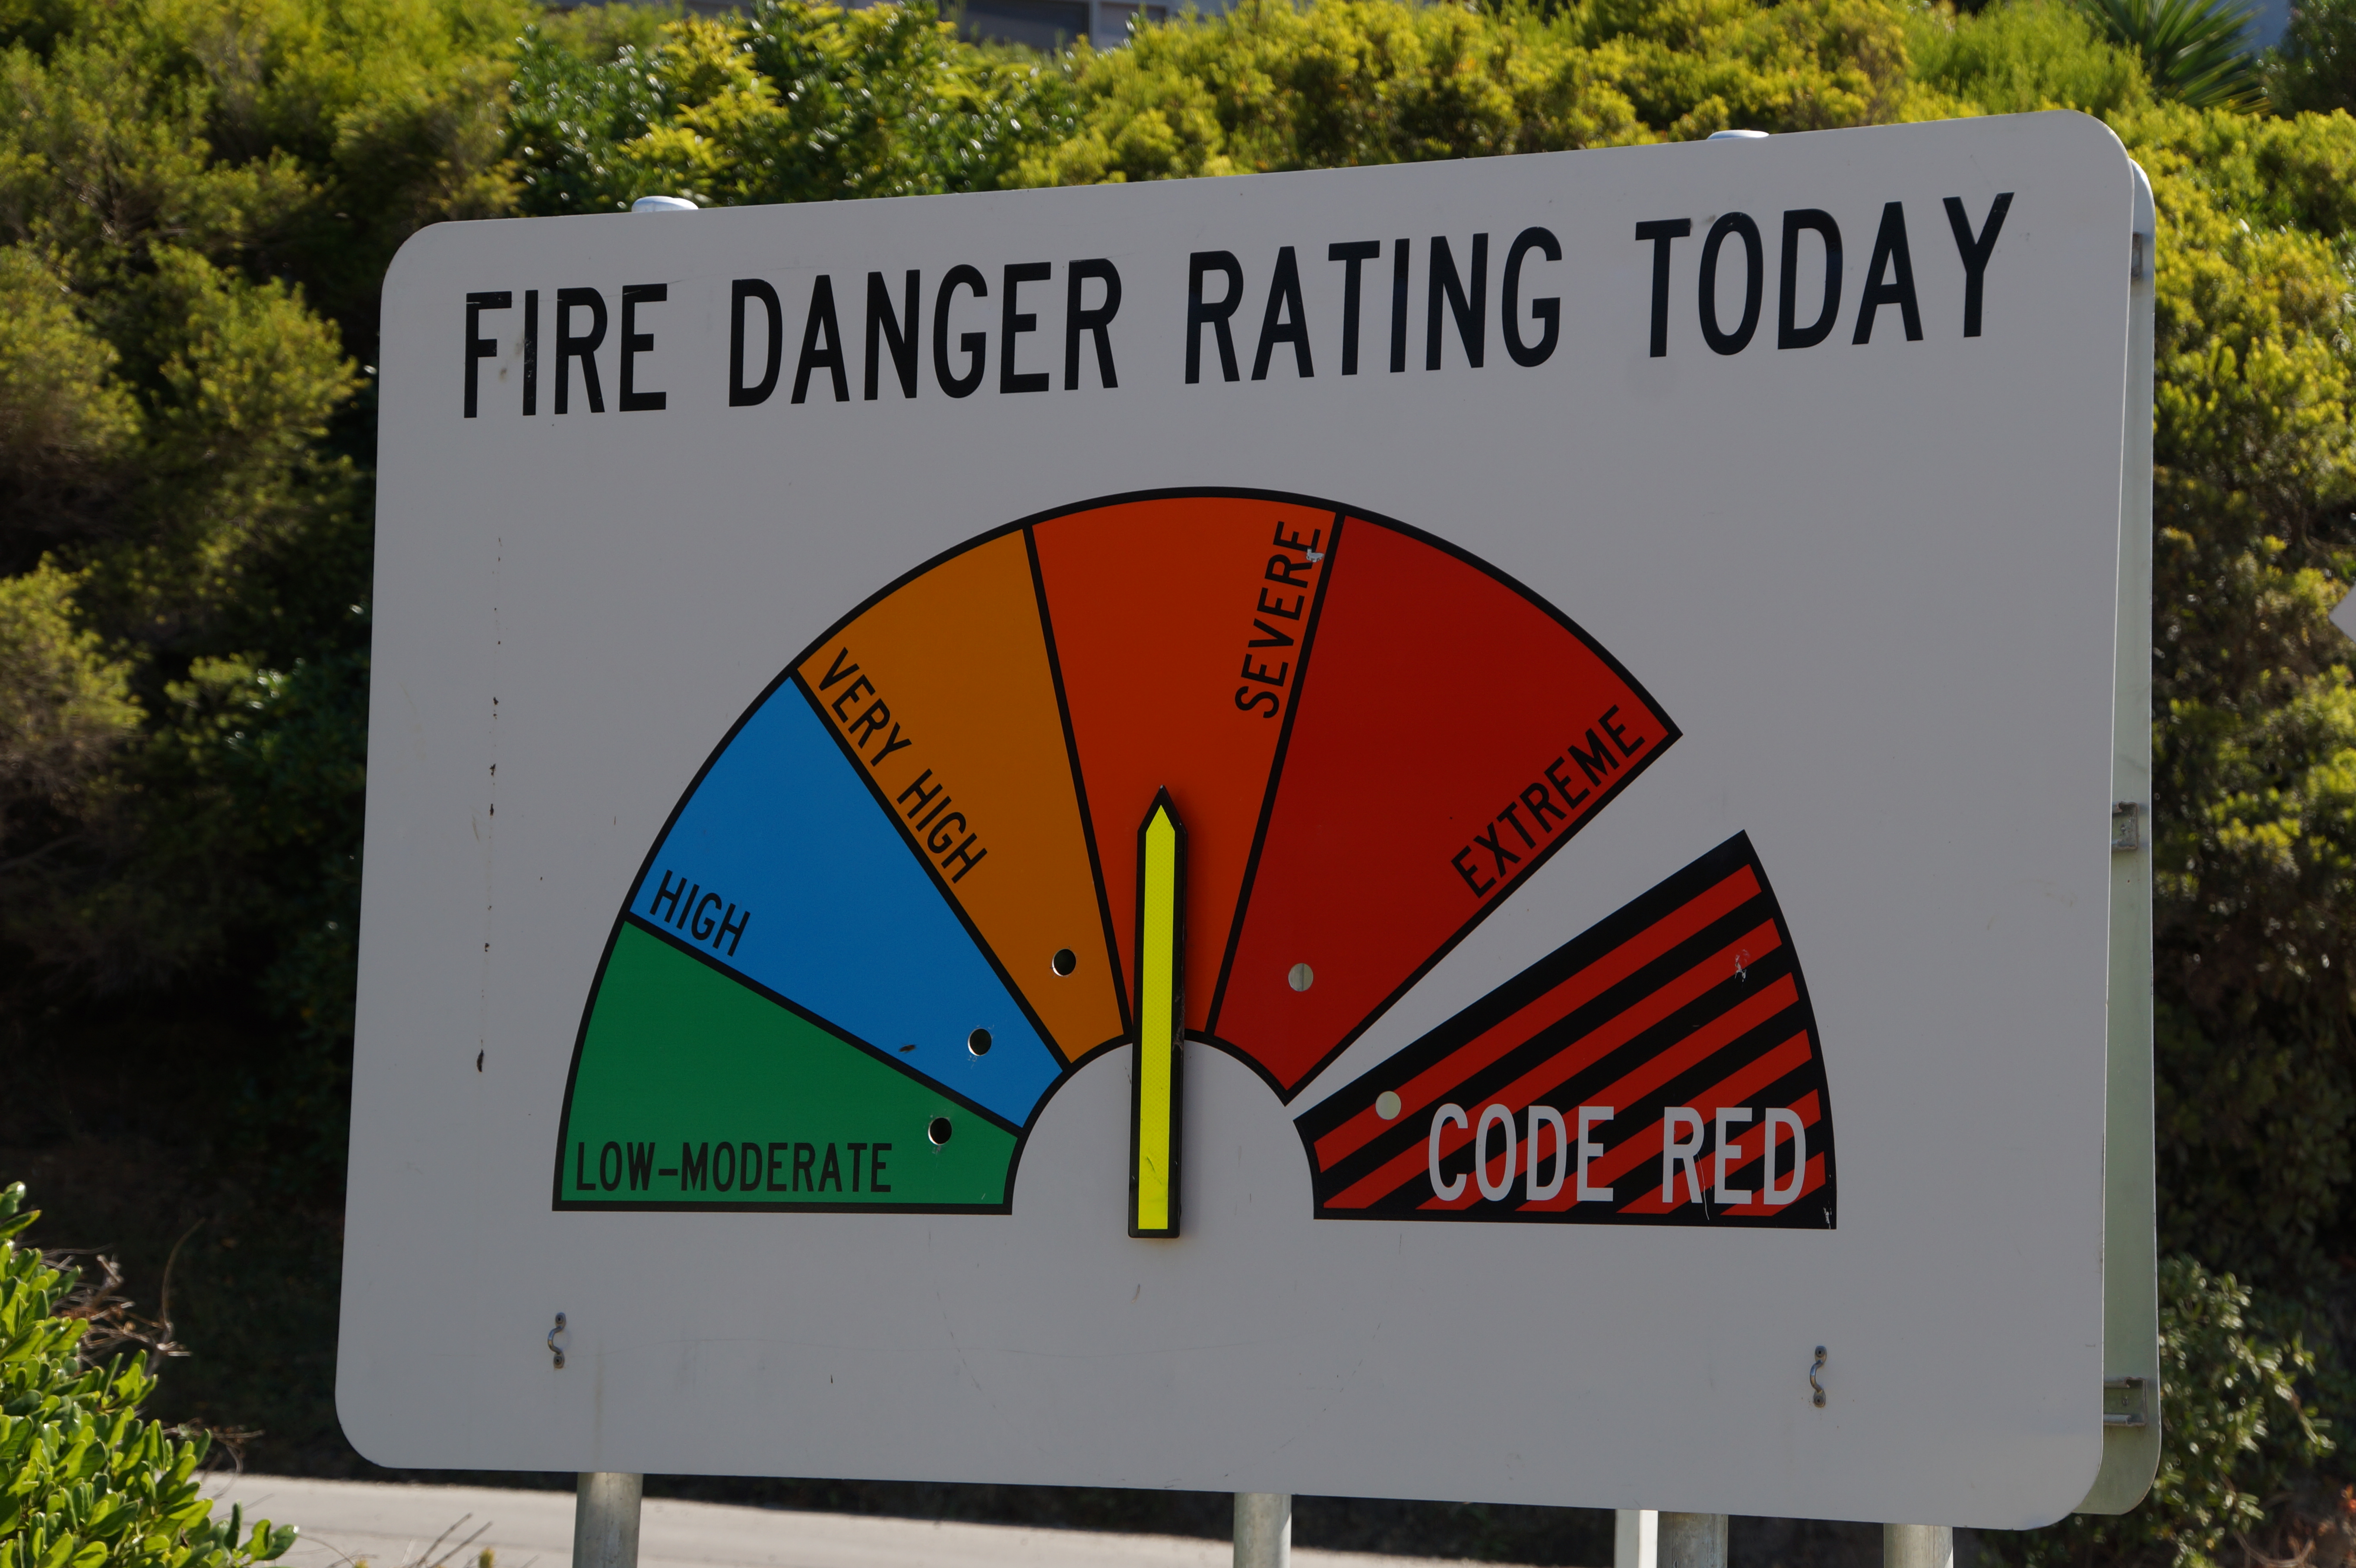 Fire danger rating severe